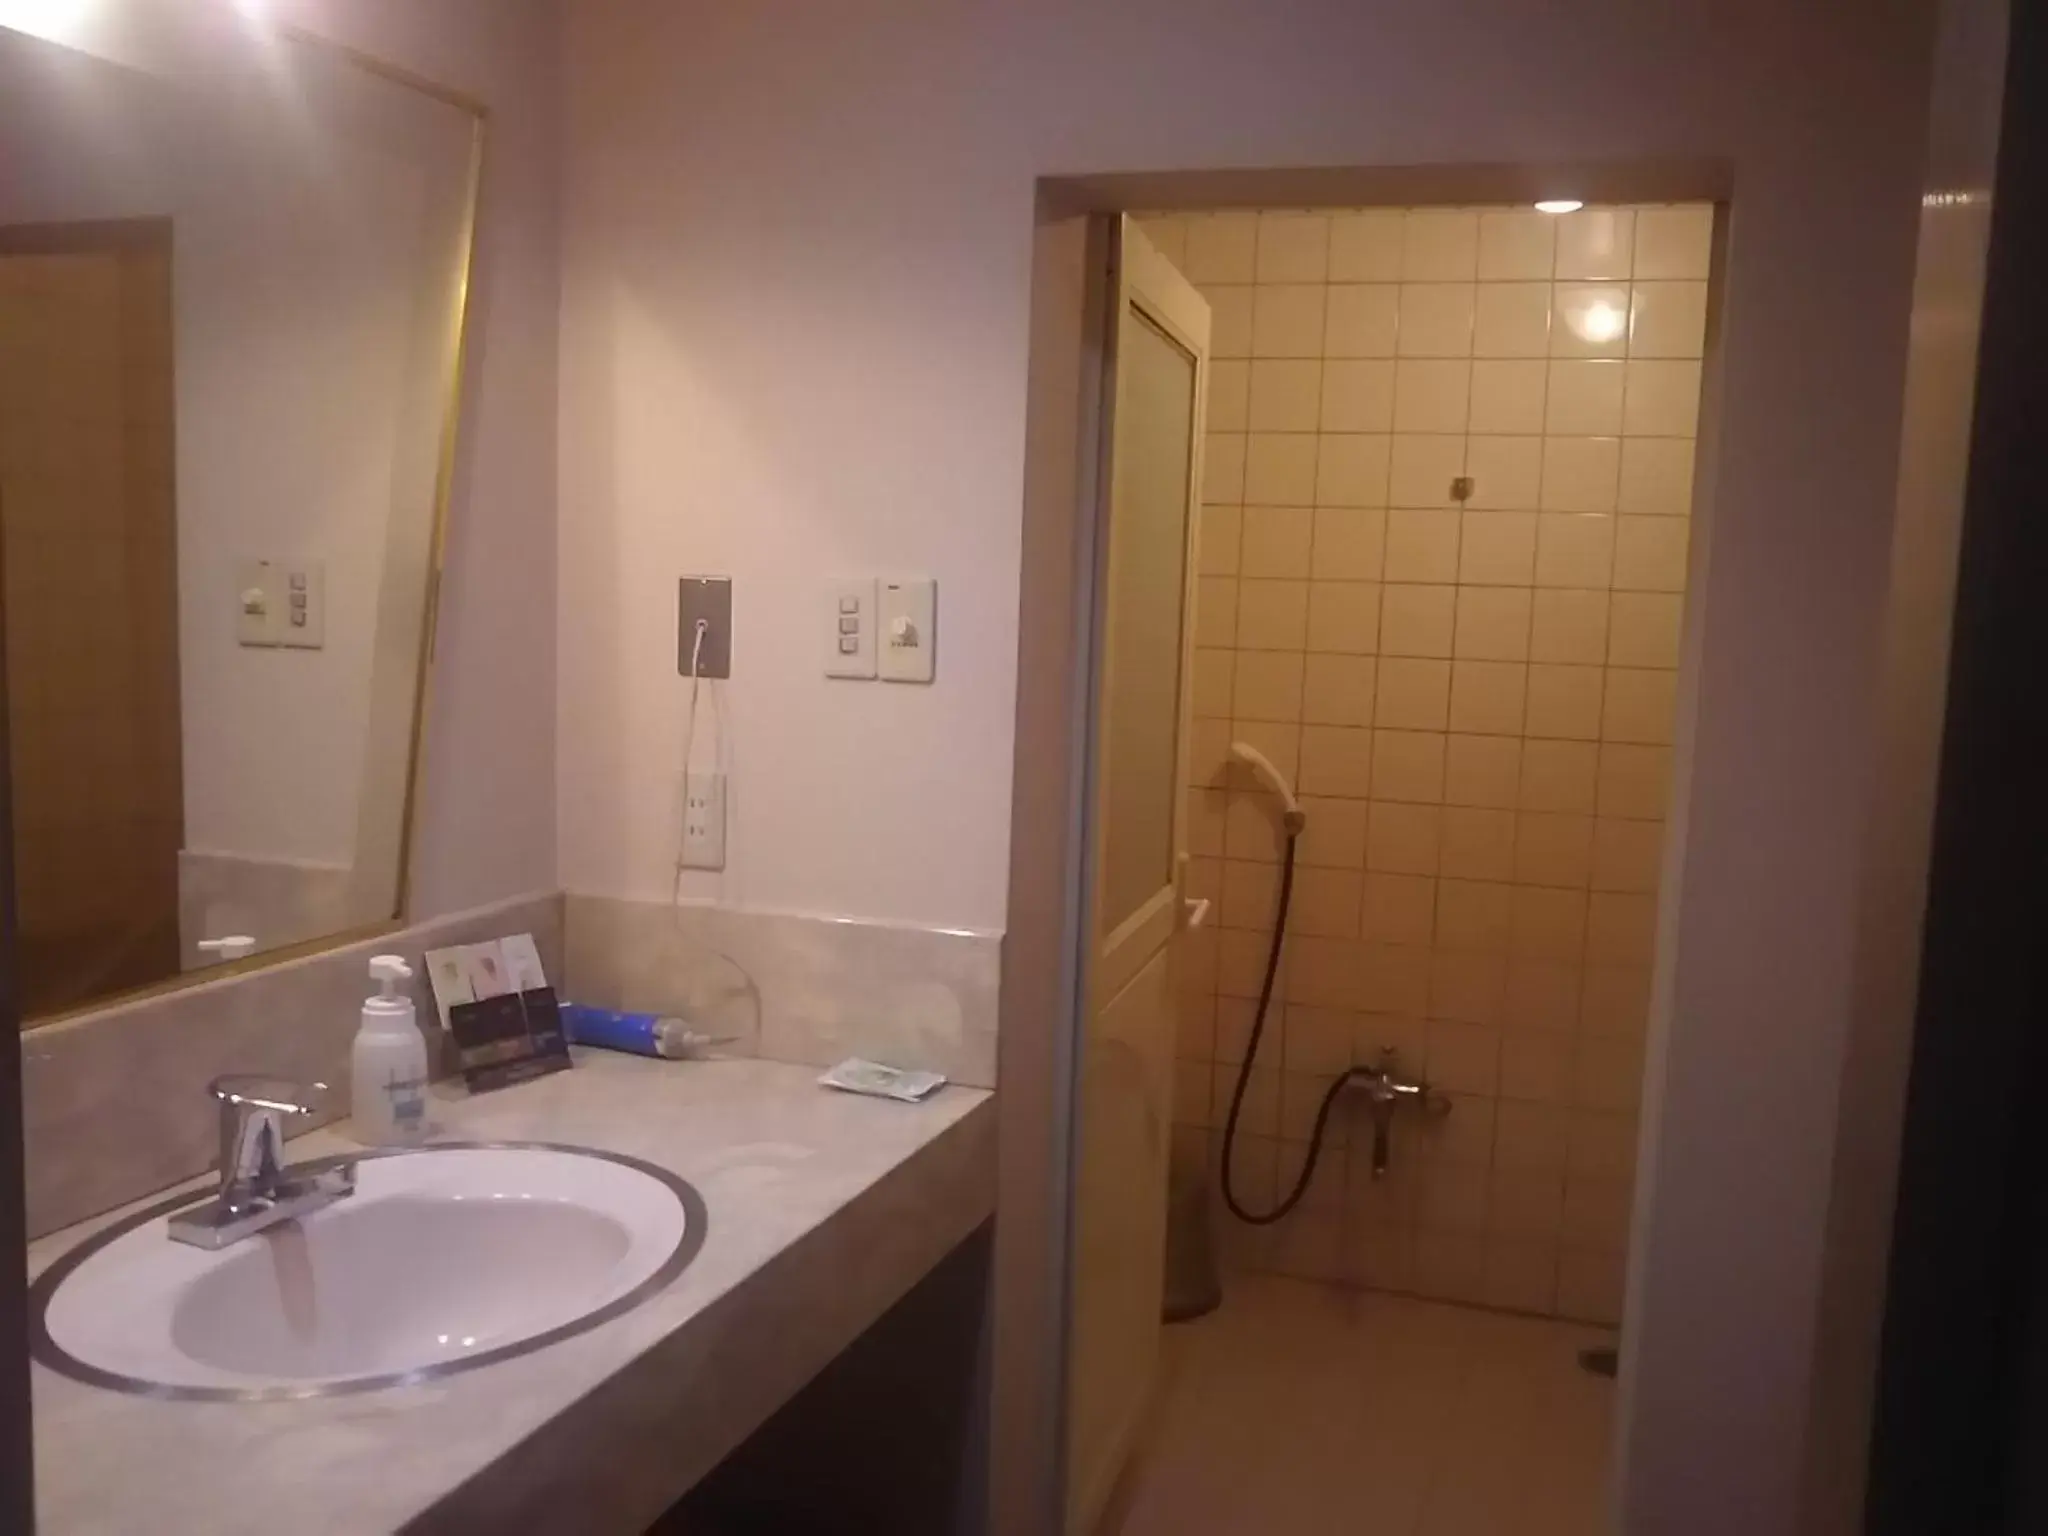 Bathroom in Hotel Sting